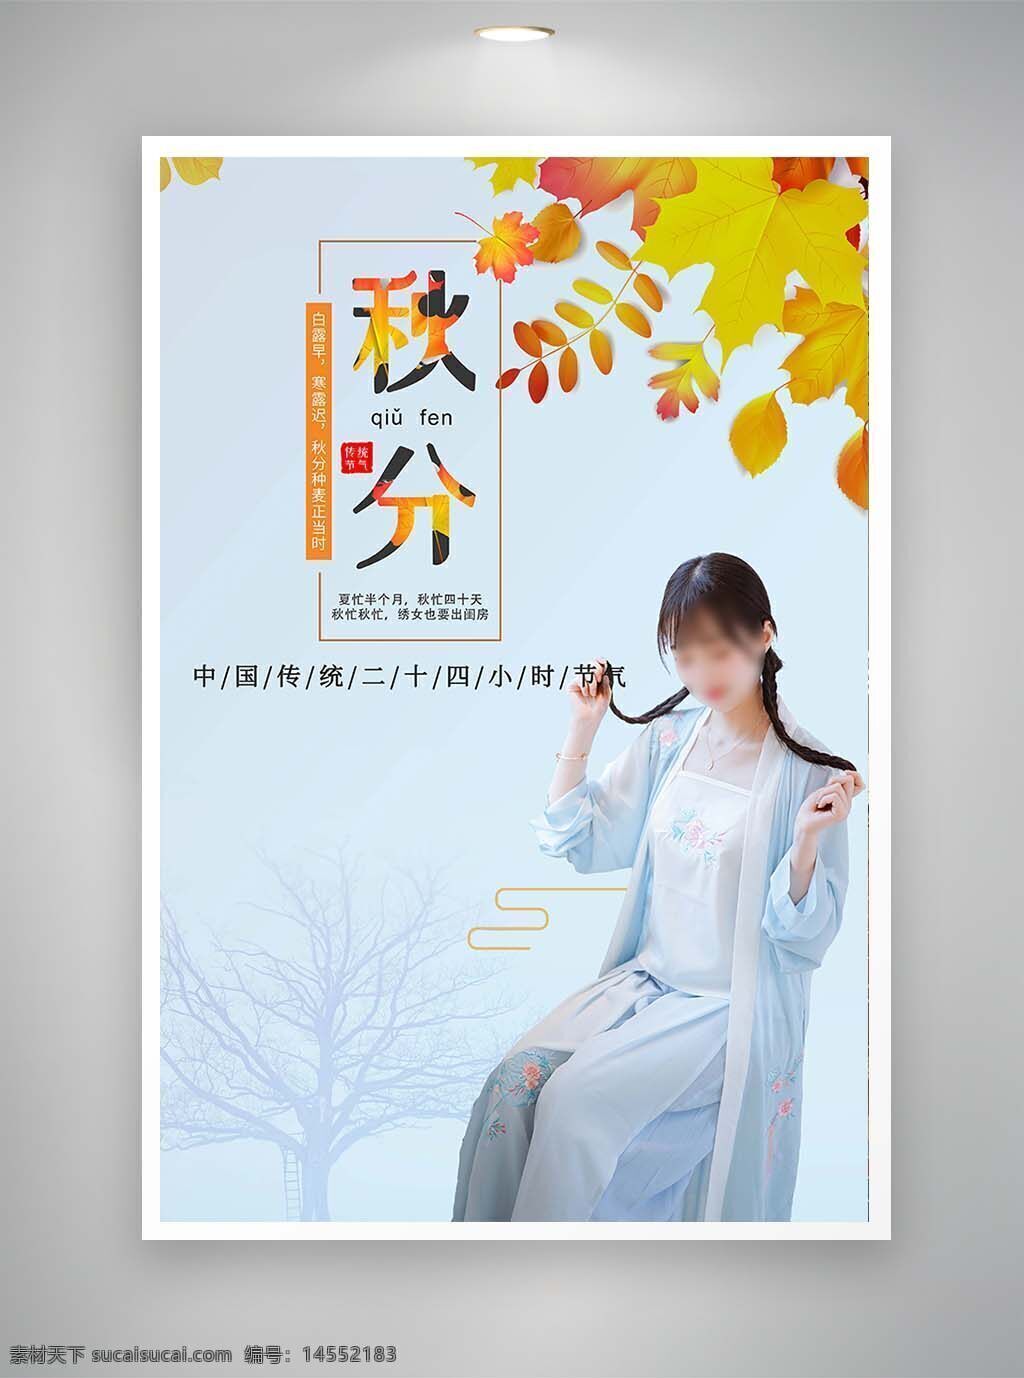 中国风海报 促销海报 古风海报 节日海报 秋风海报